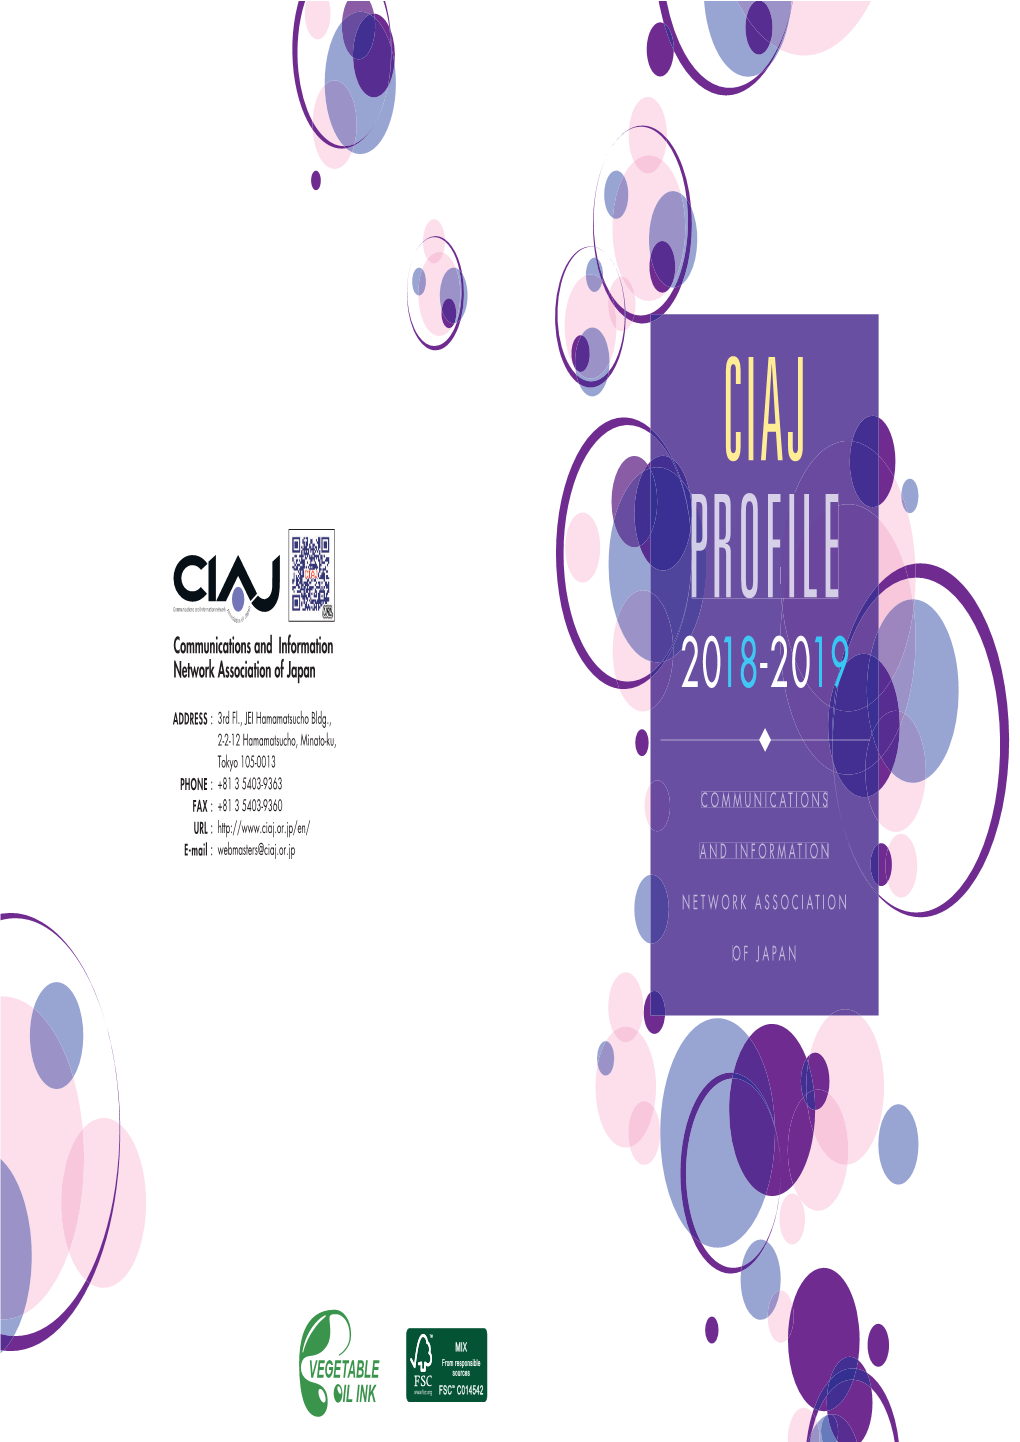 CIAJ Profile 2018-2019